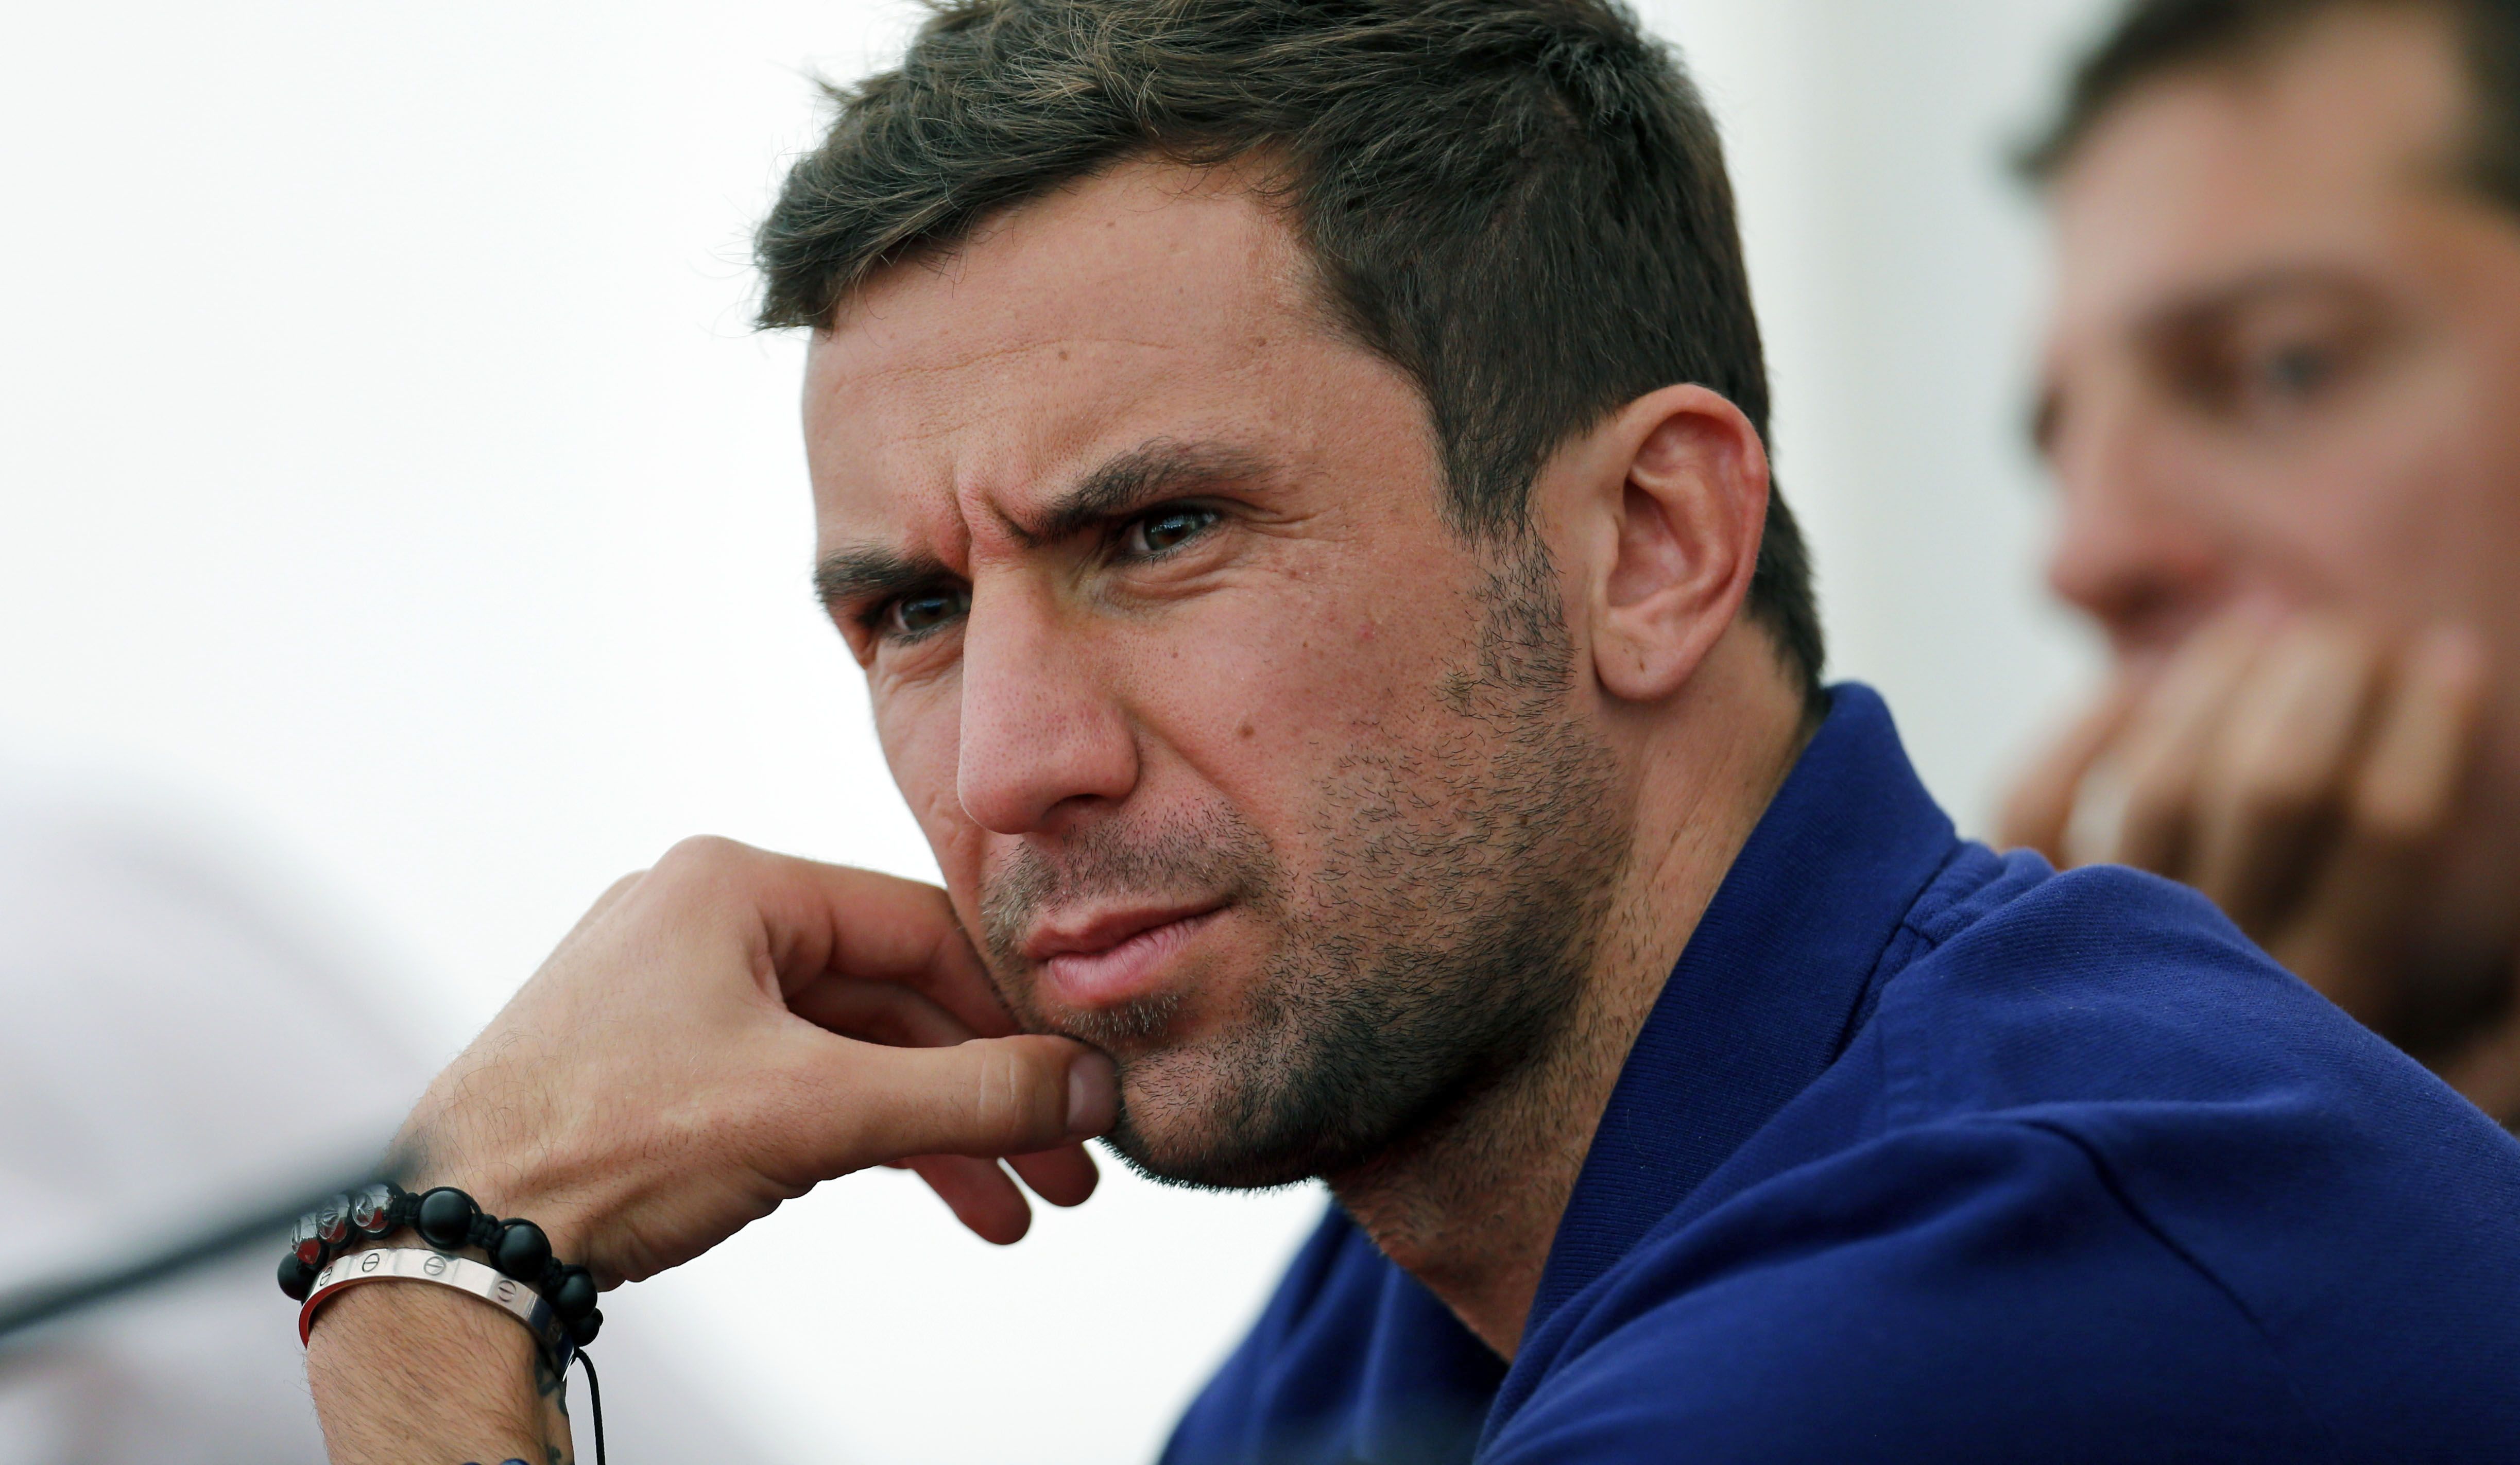 Srna blev irriterad över att Buffon sade att Spanien skulle slå Kroatien enkelt.